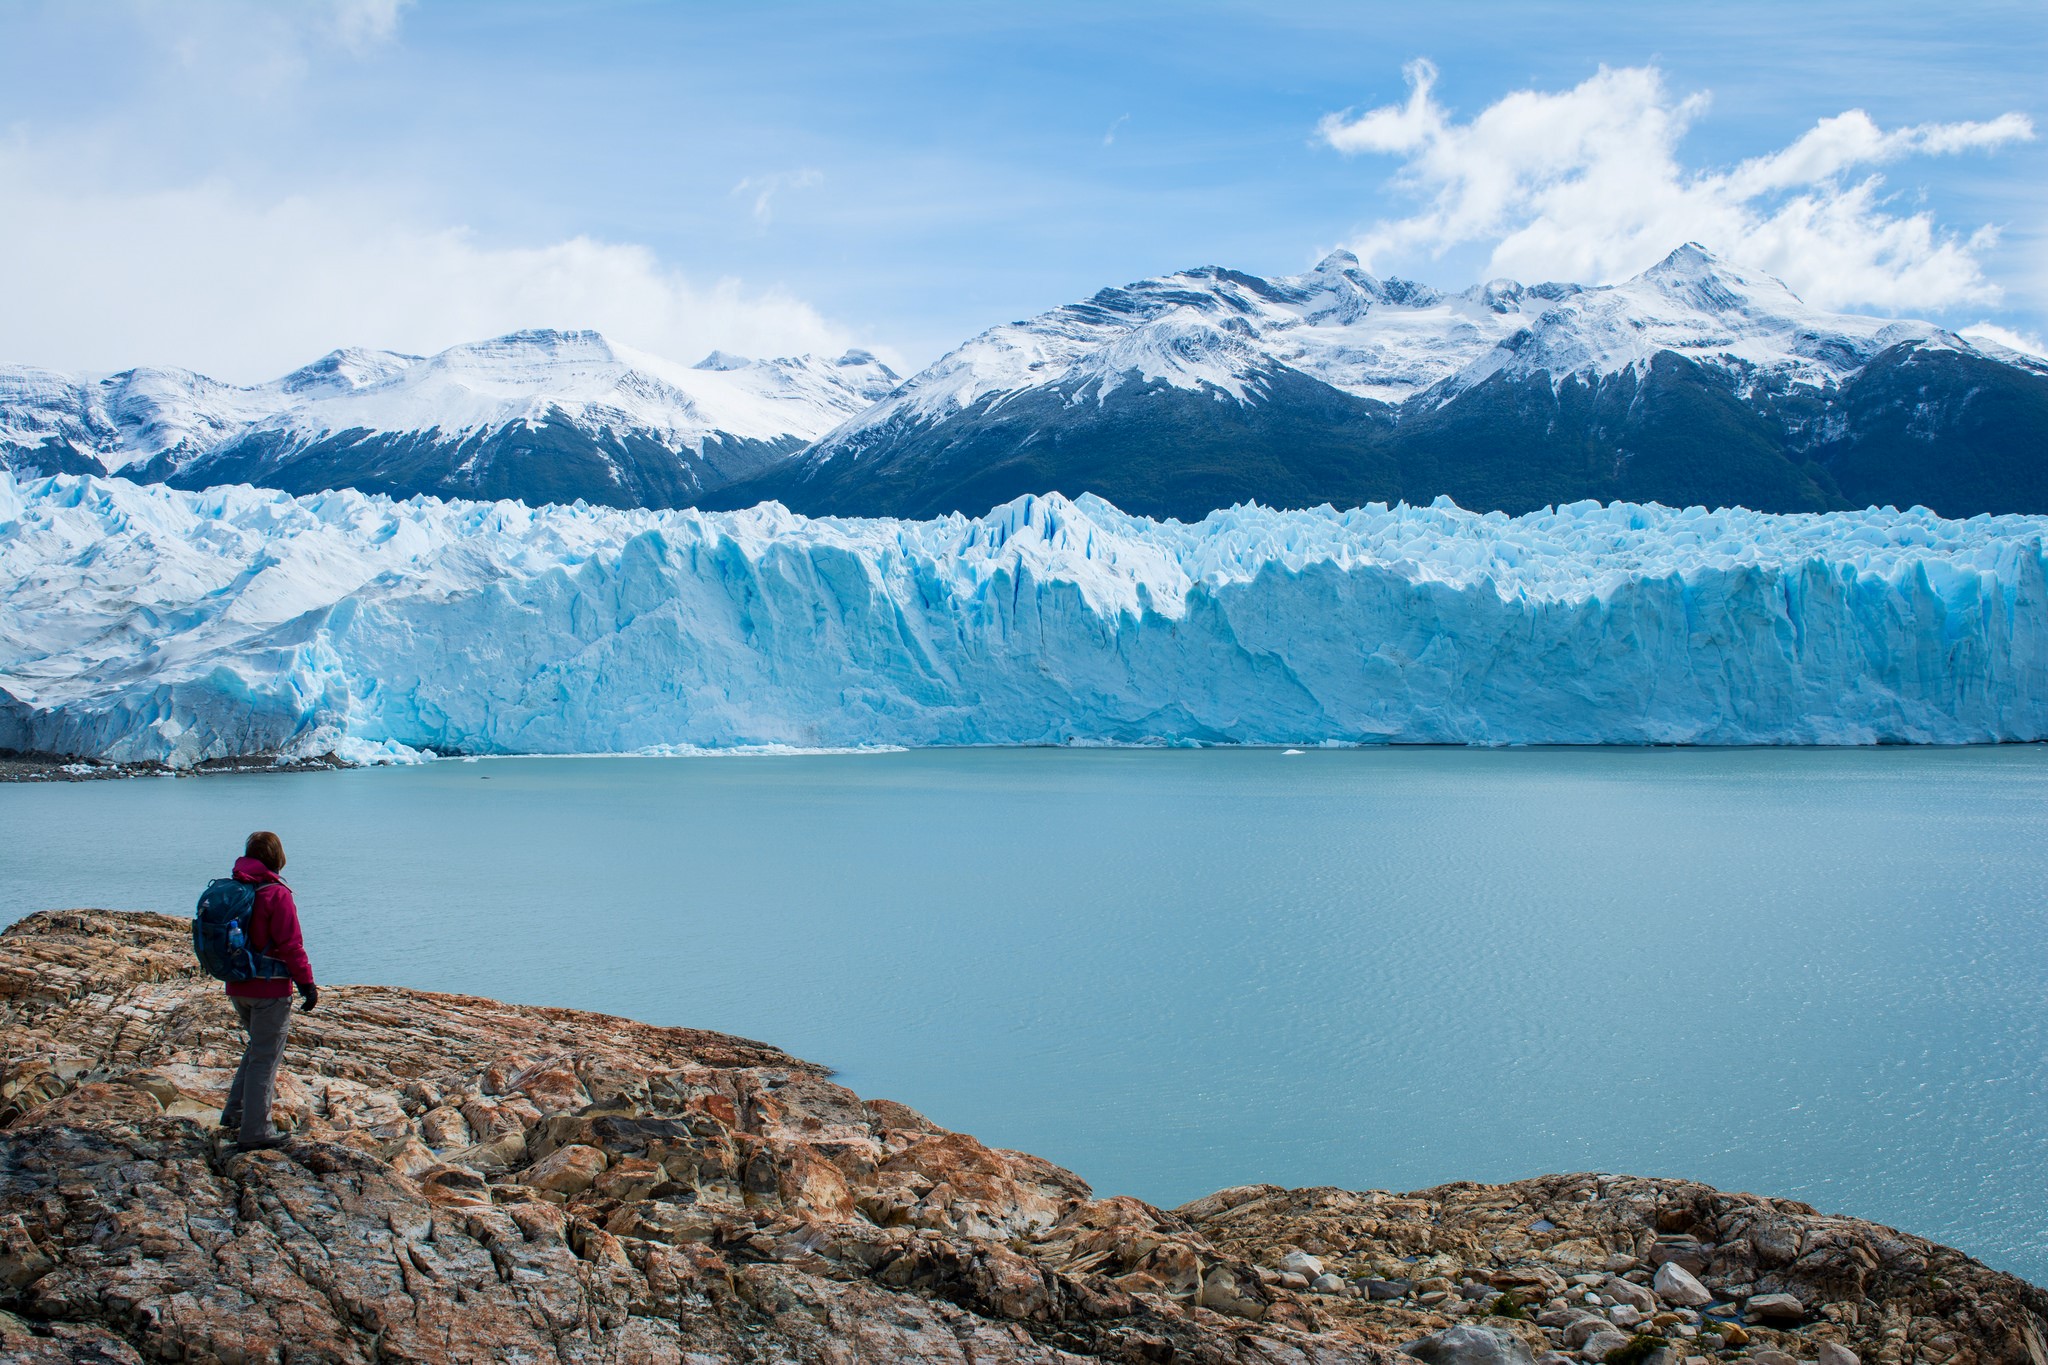 壯闊的阿根廷 Moreno 冰川是南美最著名的冰川景點。